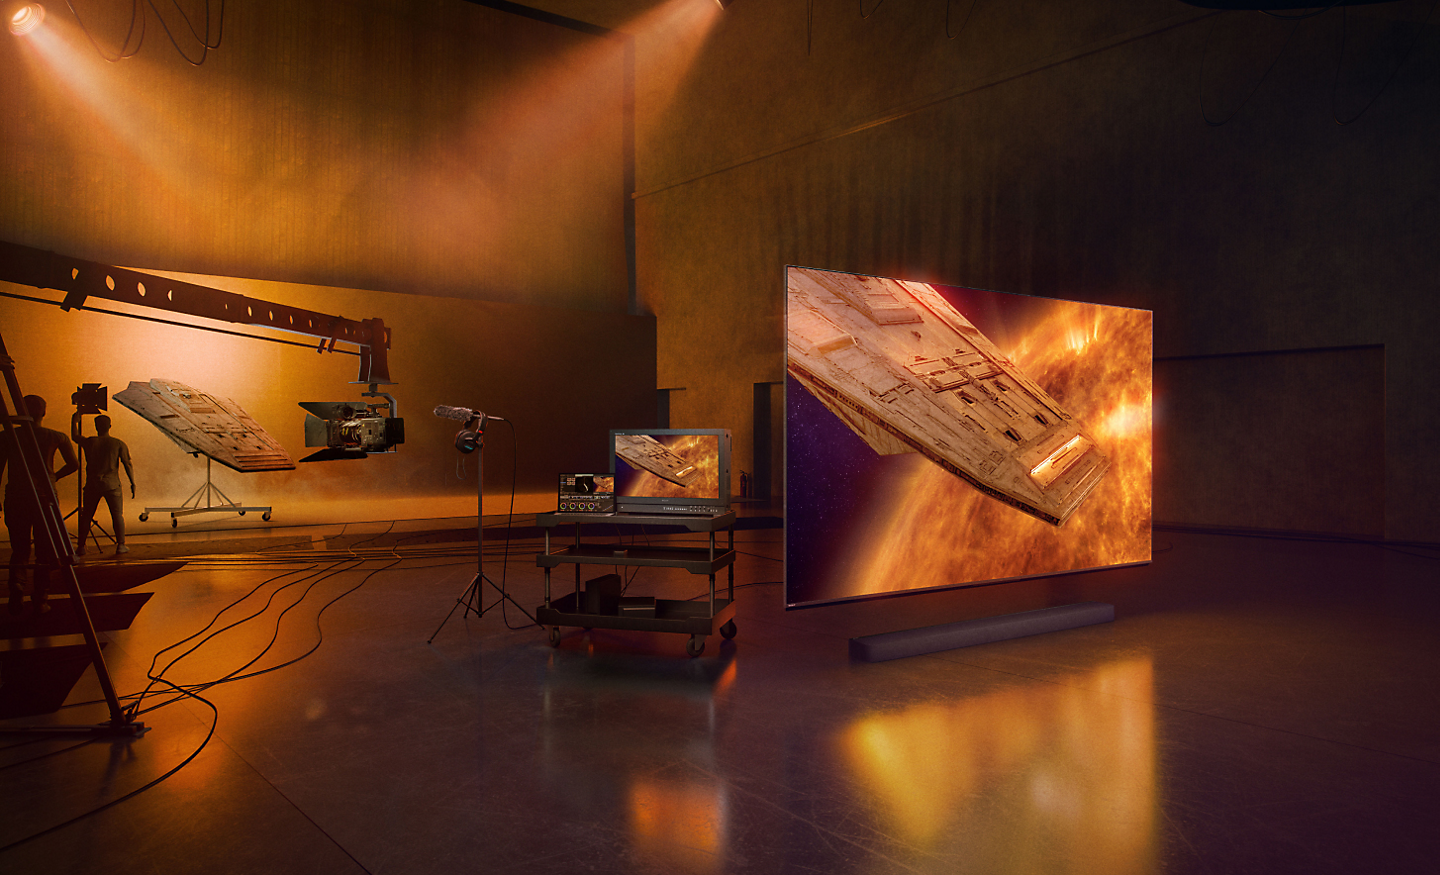 Studioszene mit der Silhouette von Technikern und Produktionsbearbeitungsausrüstung links und Schrägansicht eines Fernsehers und einer Soundbar rechts; auf dem Bildschirm ist ein Raumschiff in einer nebligen roten und blauen Umgebung zu sehen